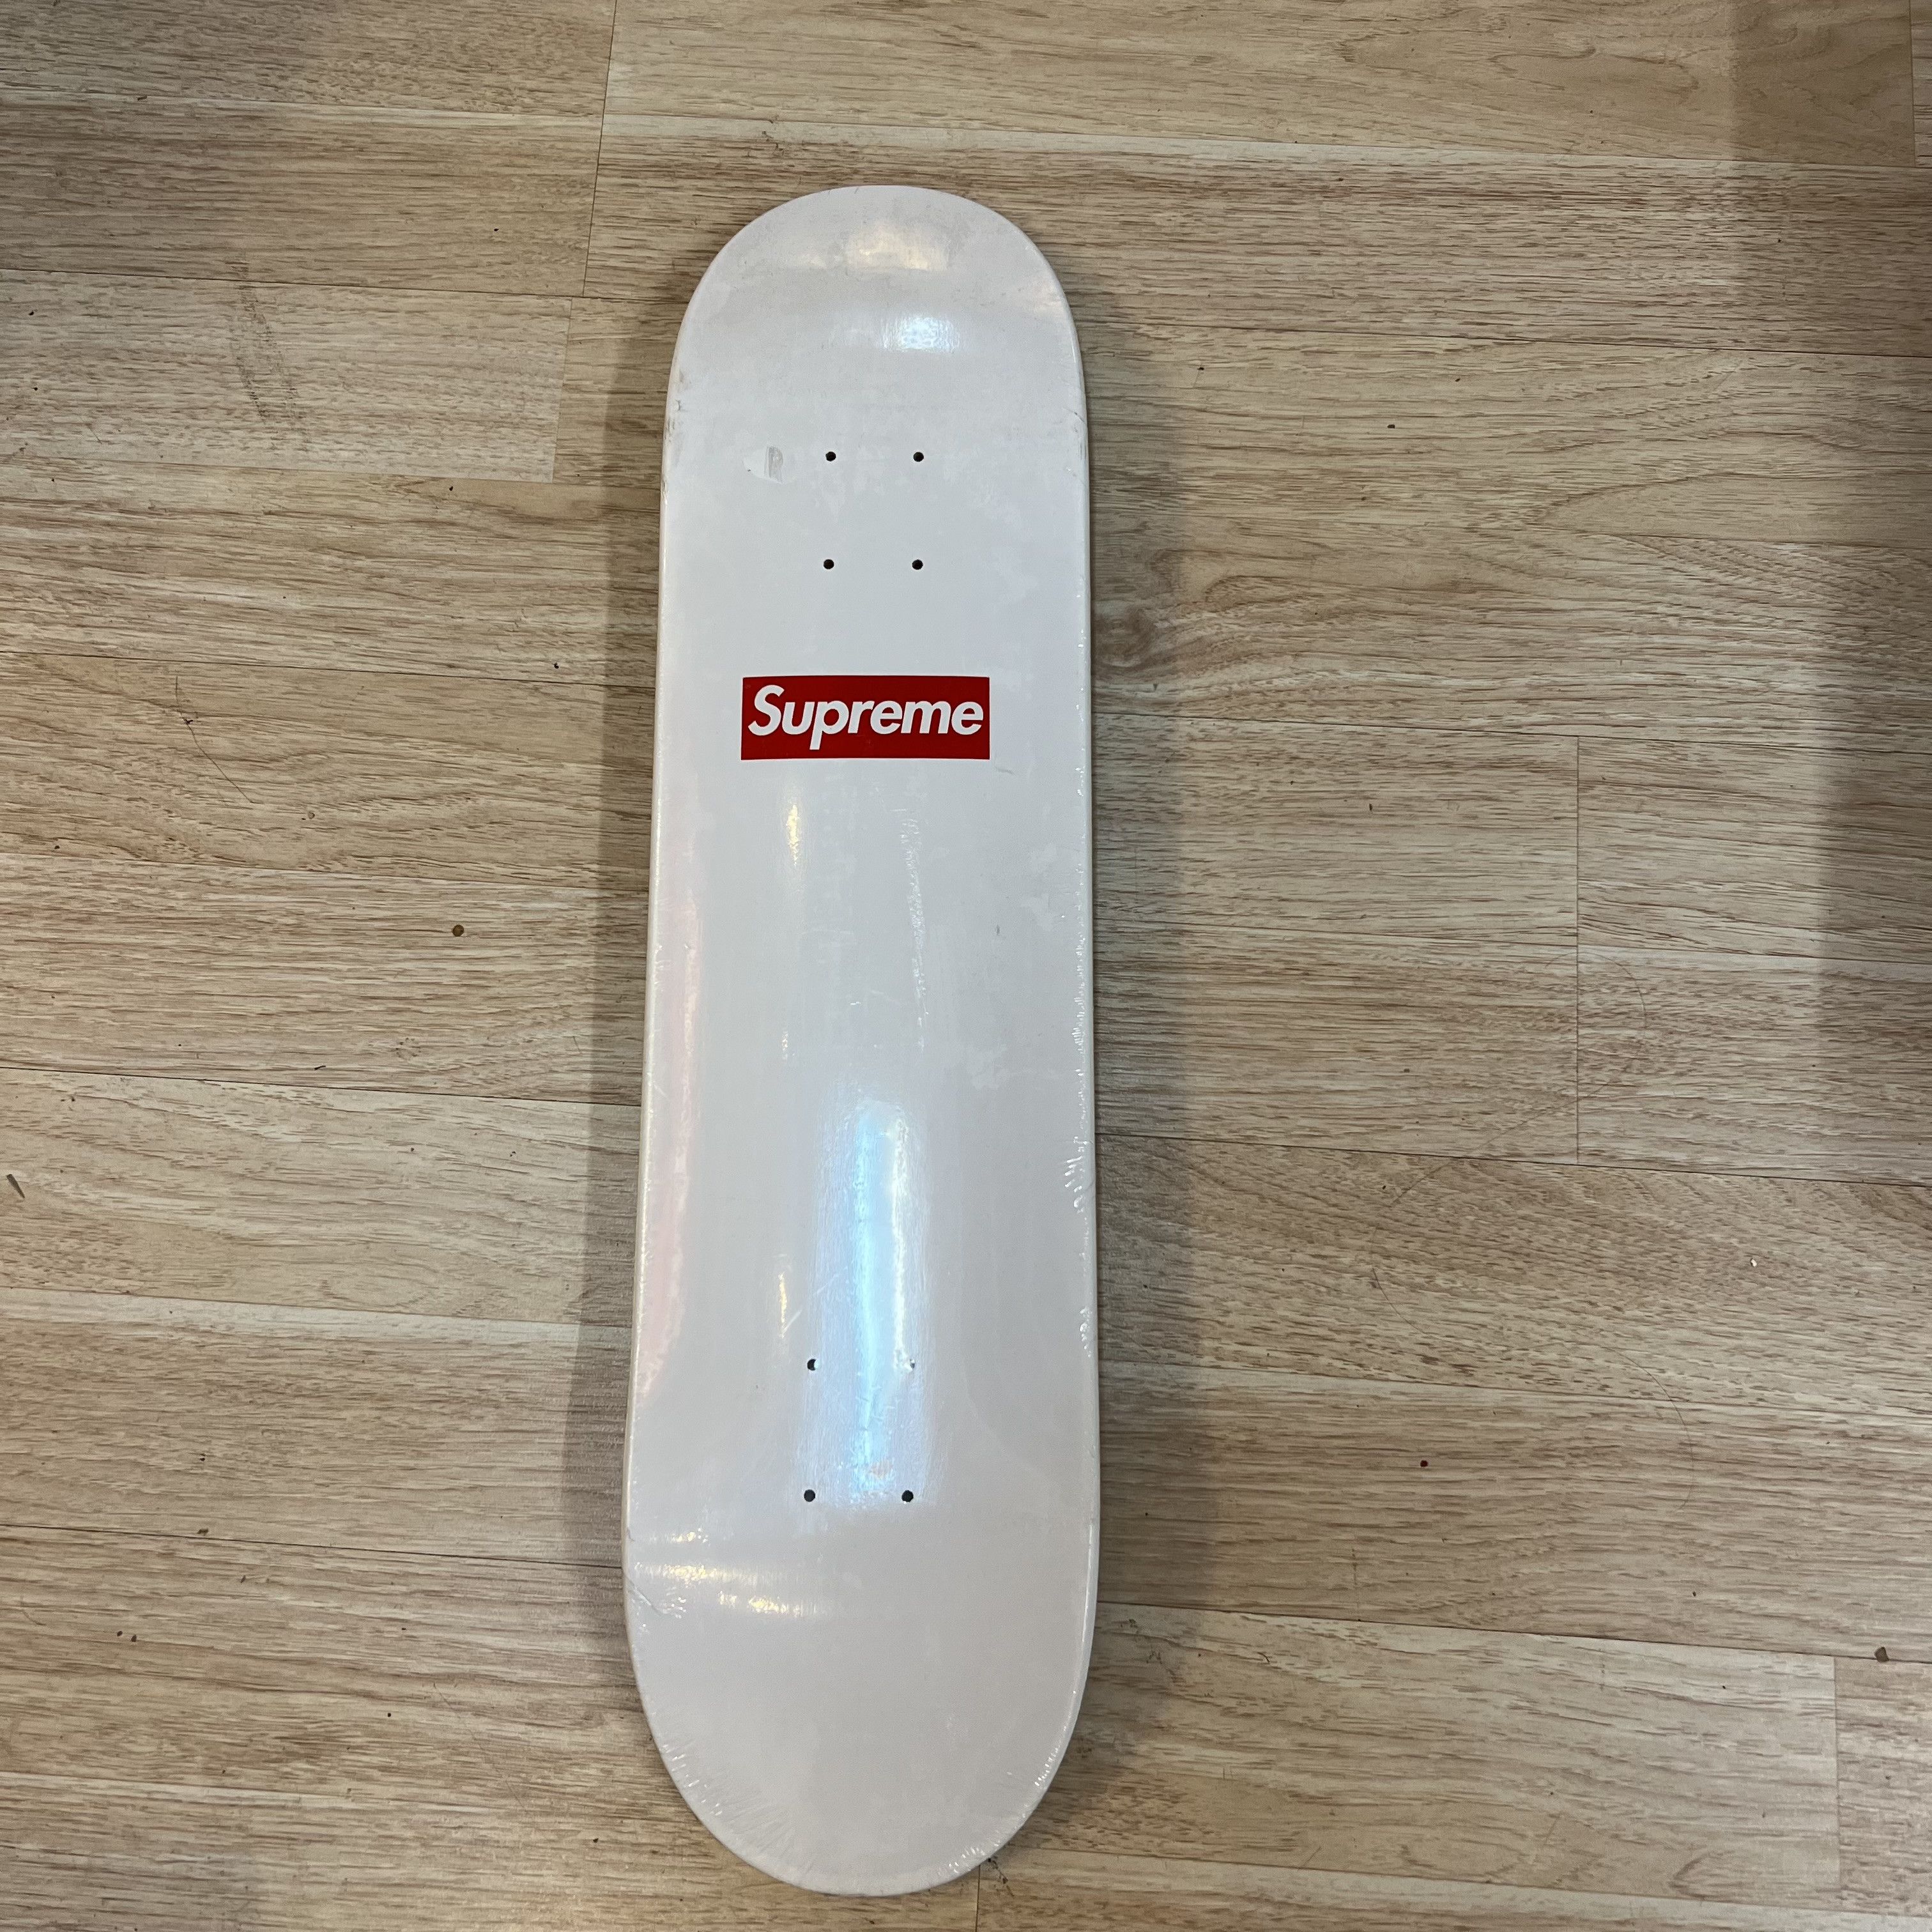 Supreme Supreme 20th anniversary skateboard deck | Grailed